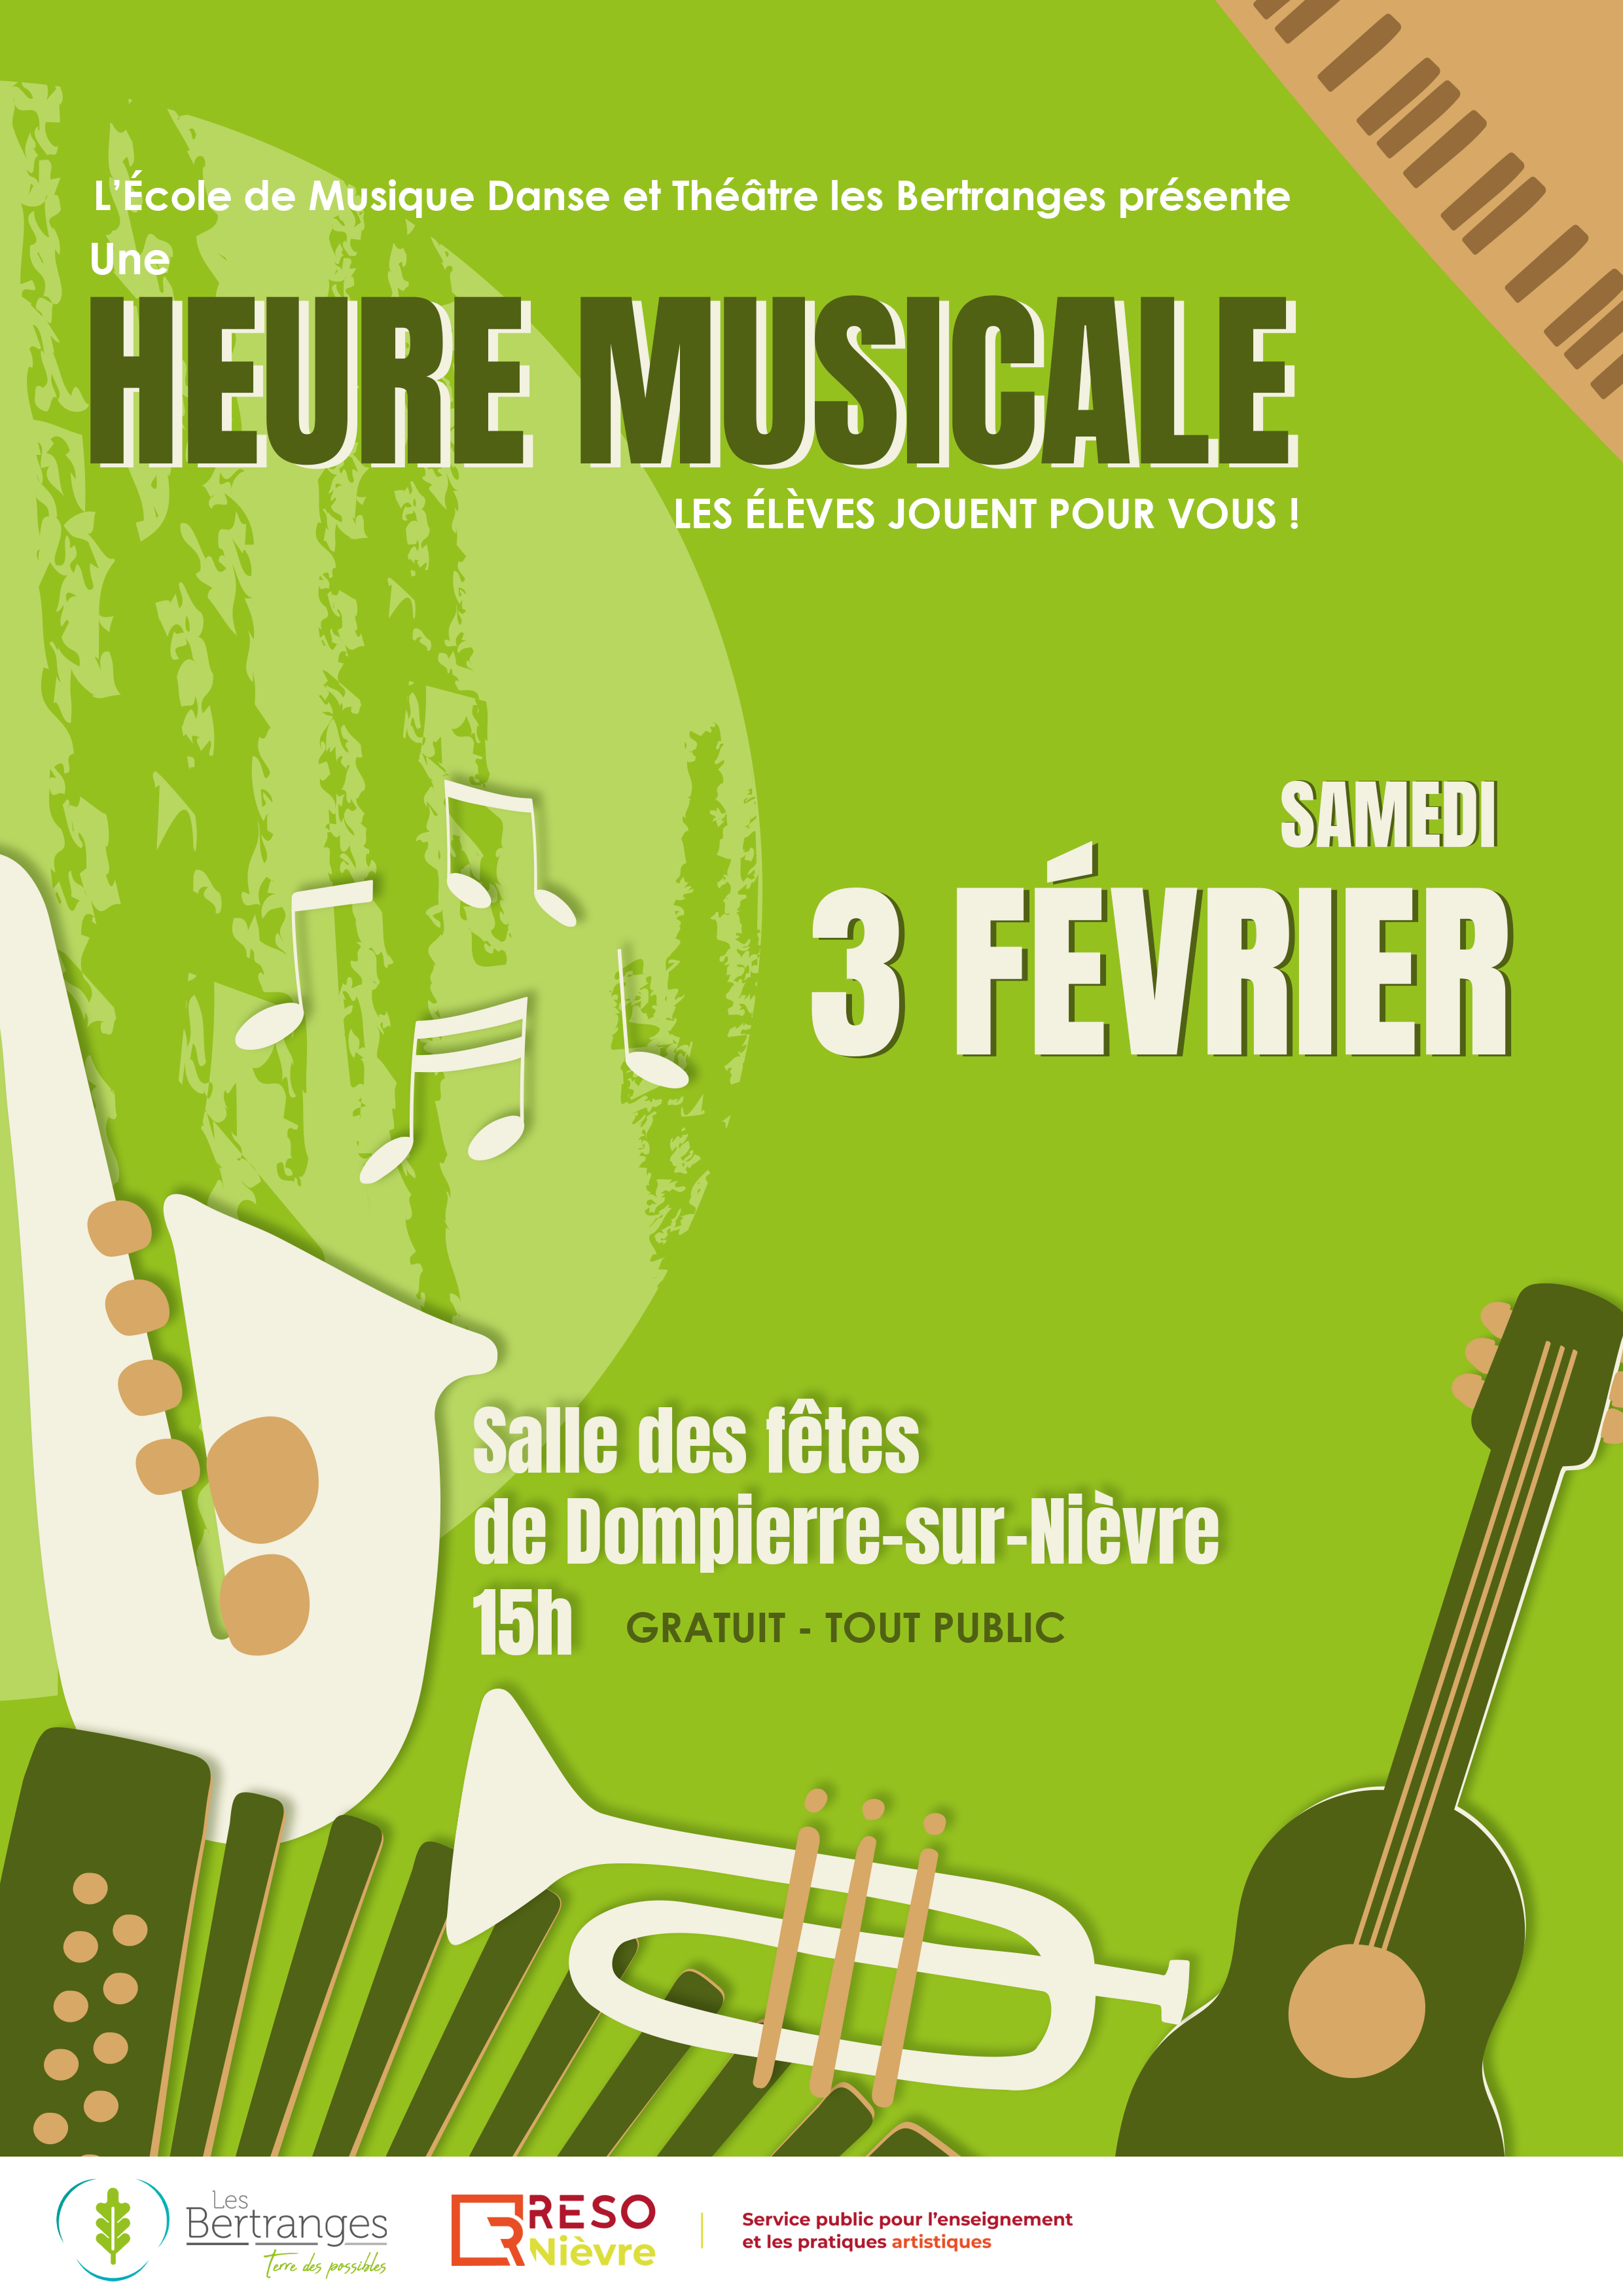 rendez-vous le samedi 3 février à dompierre-sur-nievre pour écouter les élèves de l’école de musique, danse et théâtre